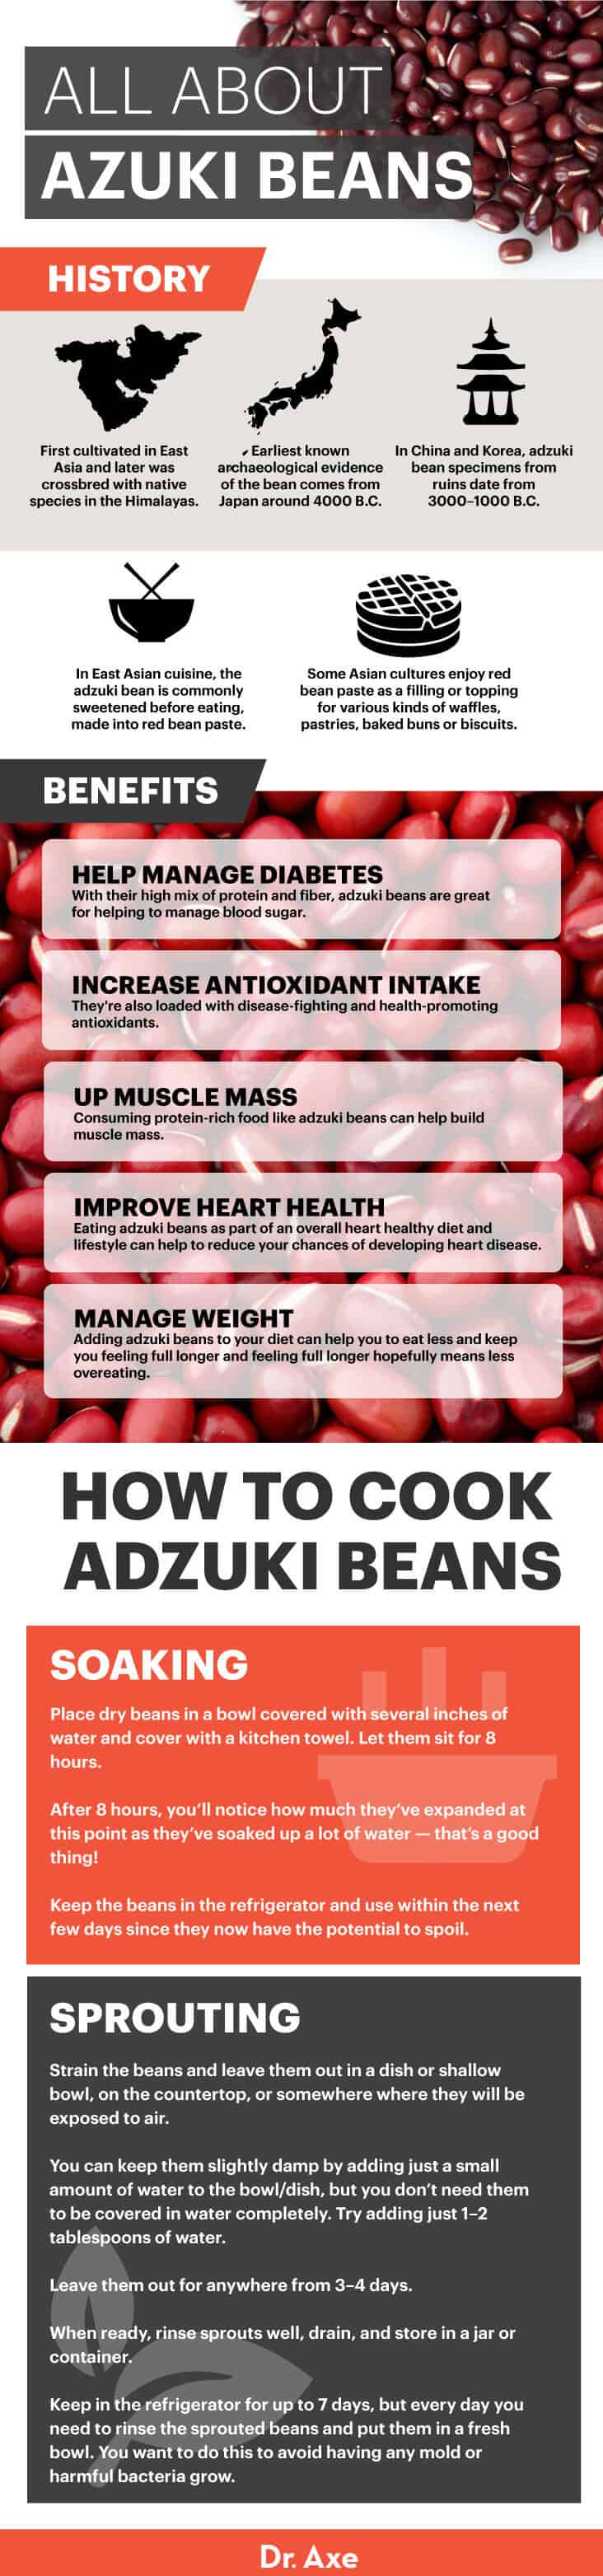 All about adzuki beans - Dr. Axe